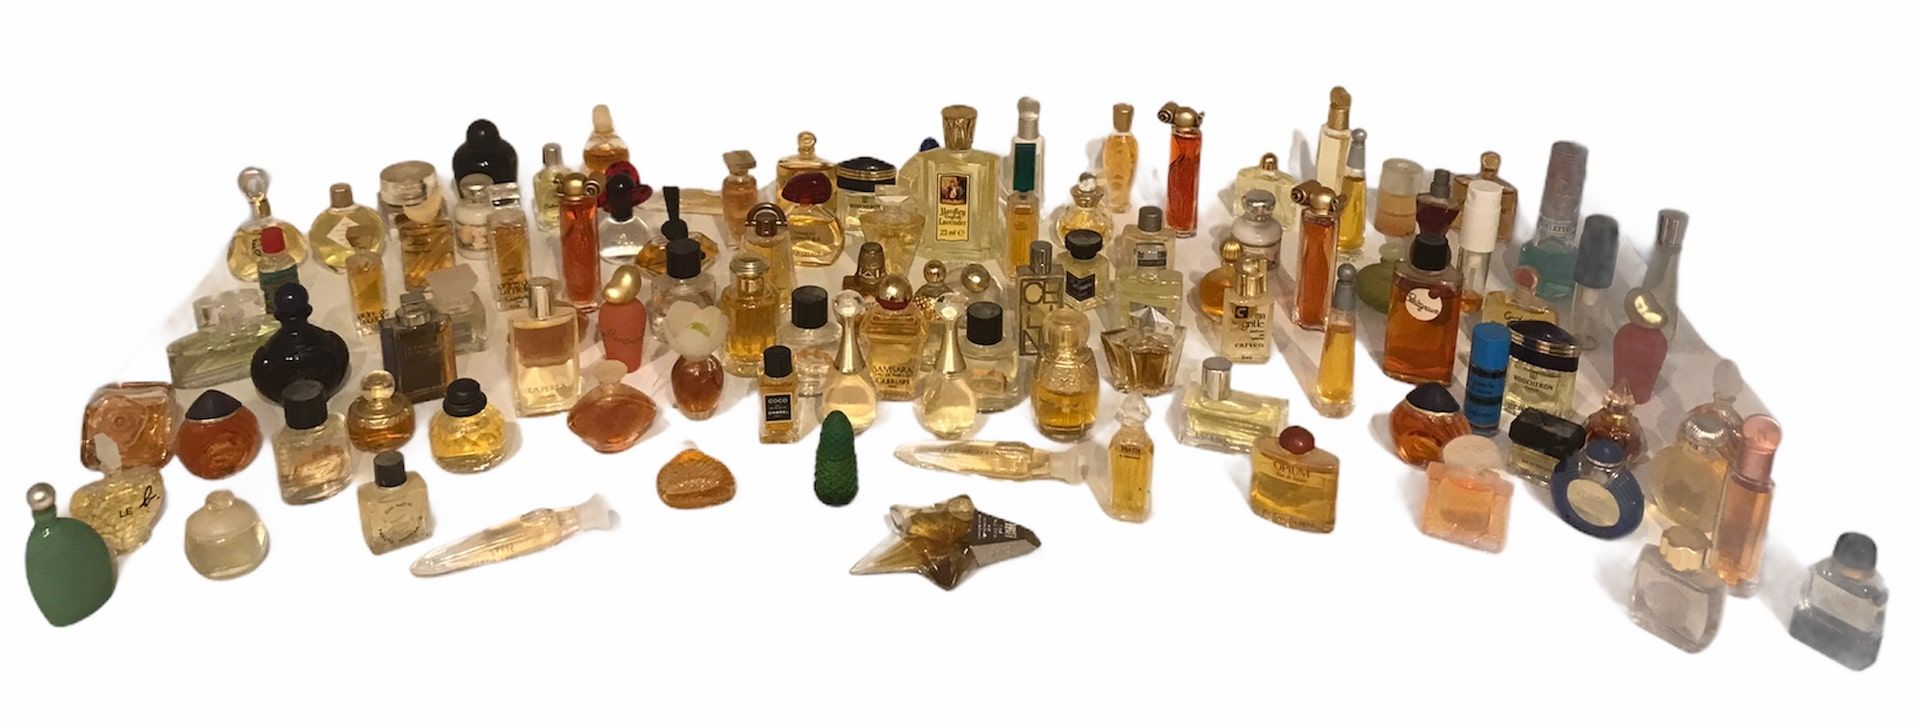 Null Lot de miniatures (102) de différentes marques de parfum

On y joint un ens&hellip;